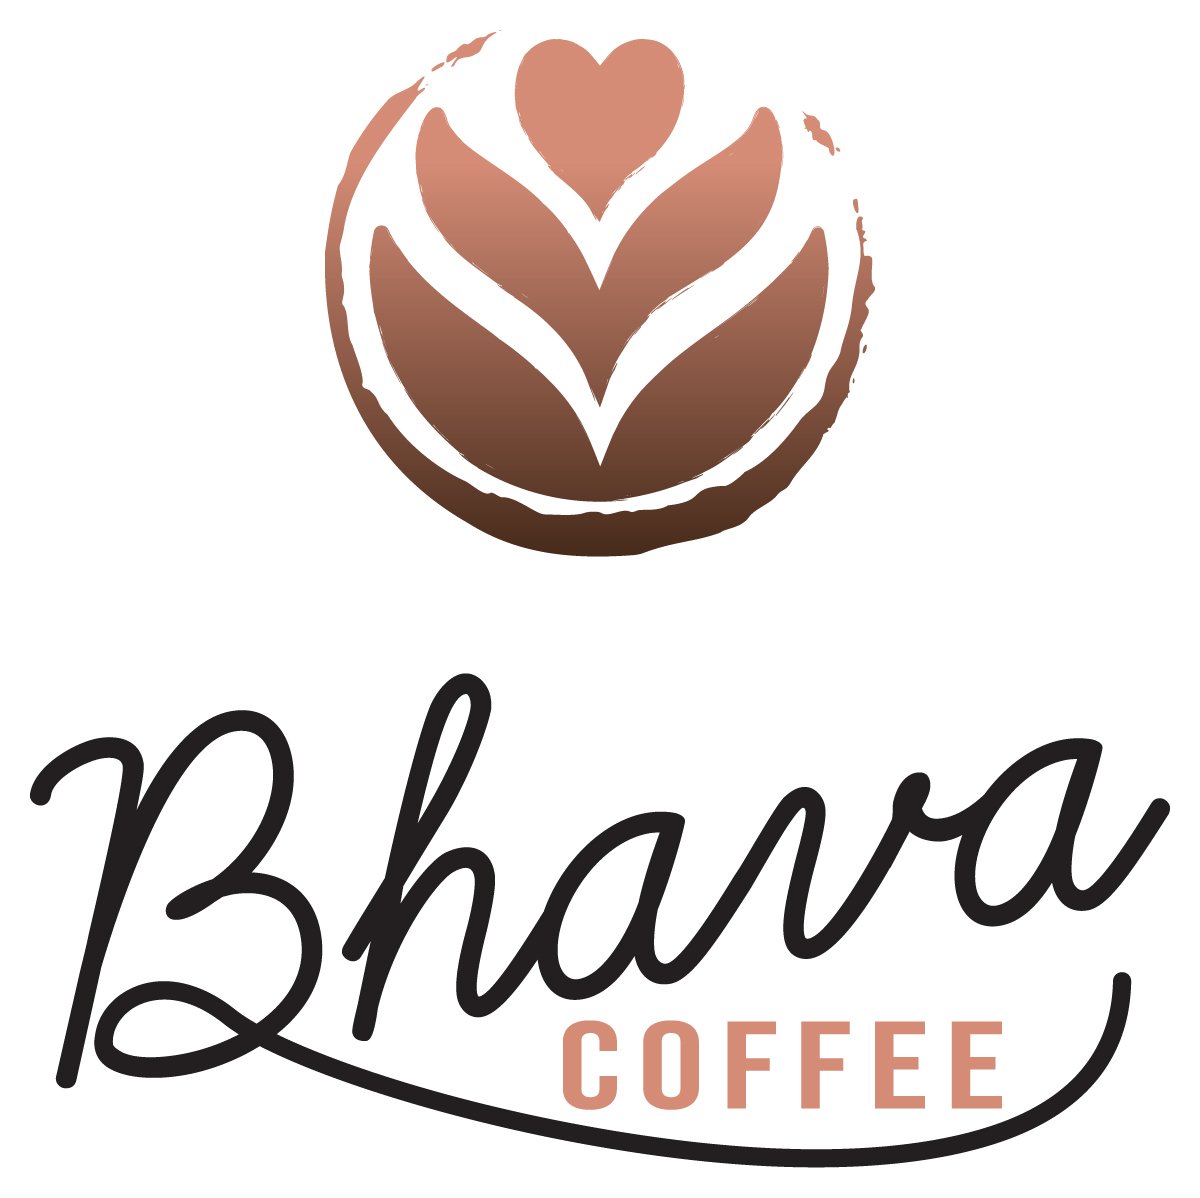 BhavaCoffee_logo full color rgb_web.jpg